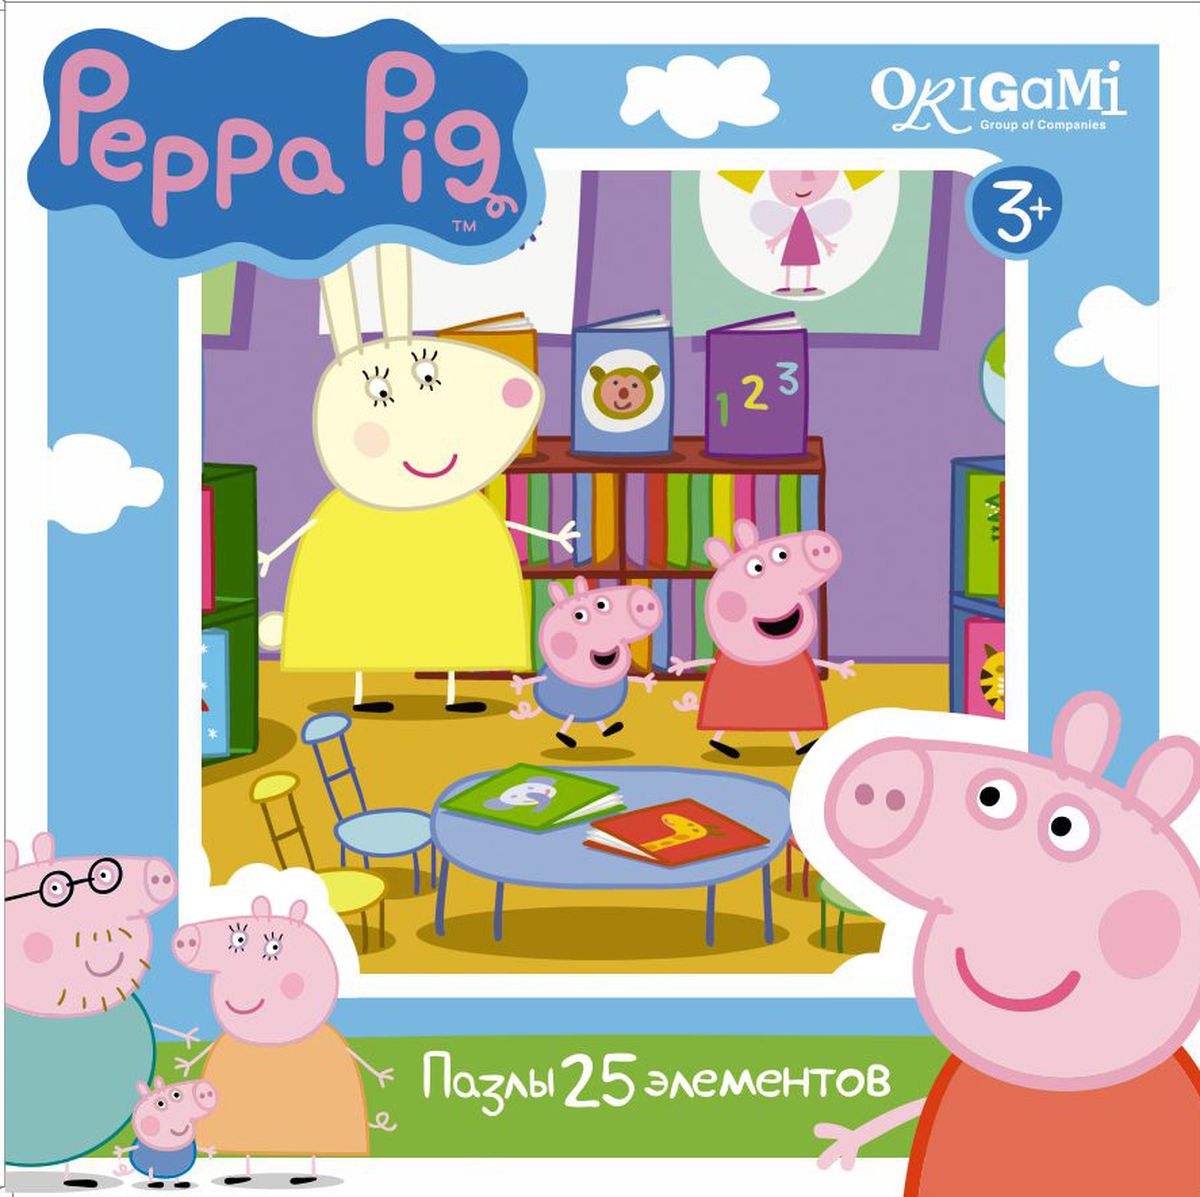 Оригами Пазл для малышей Peppa Pig 01583